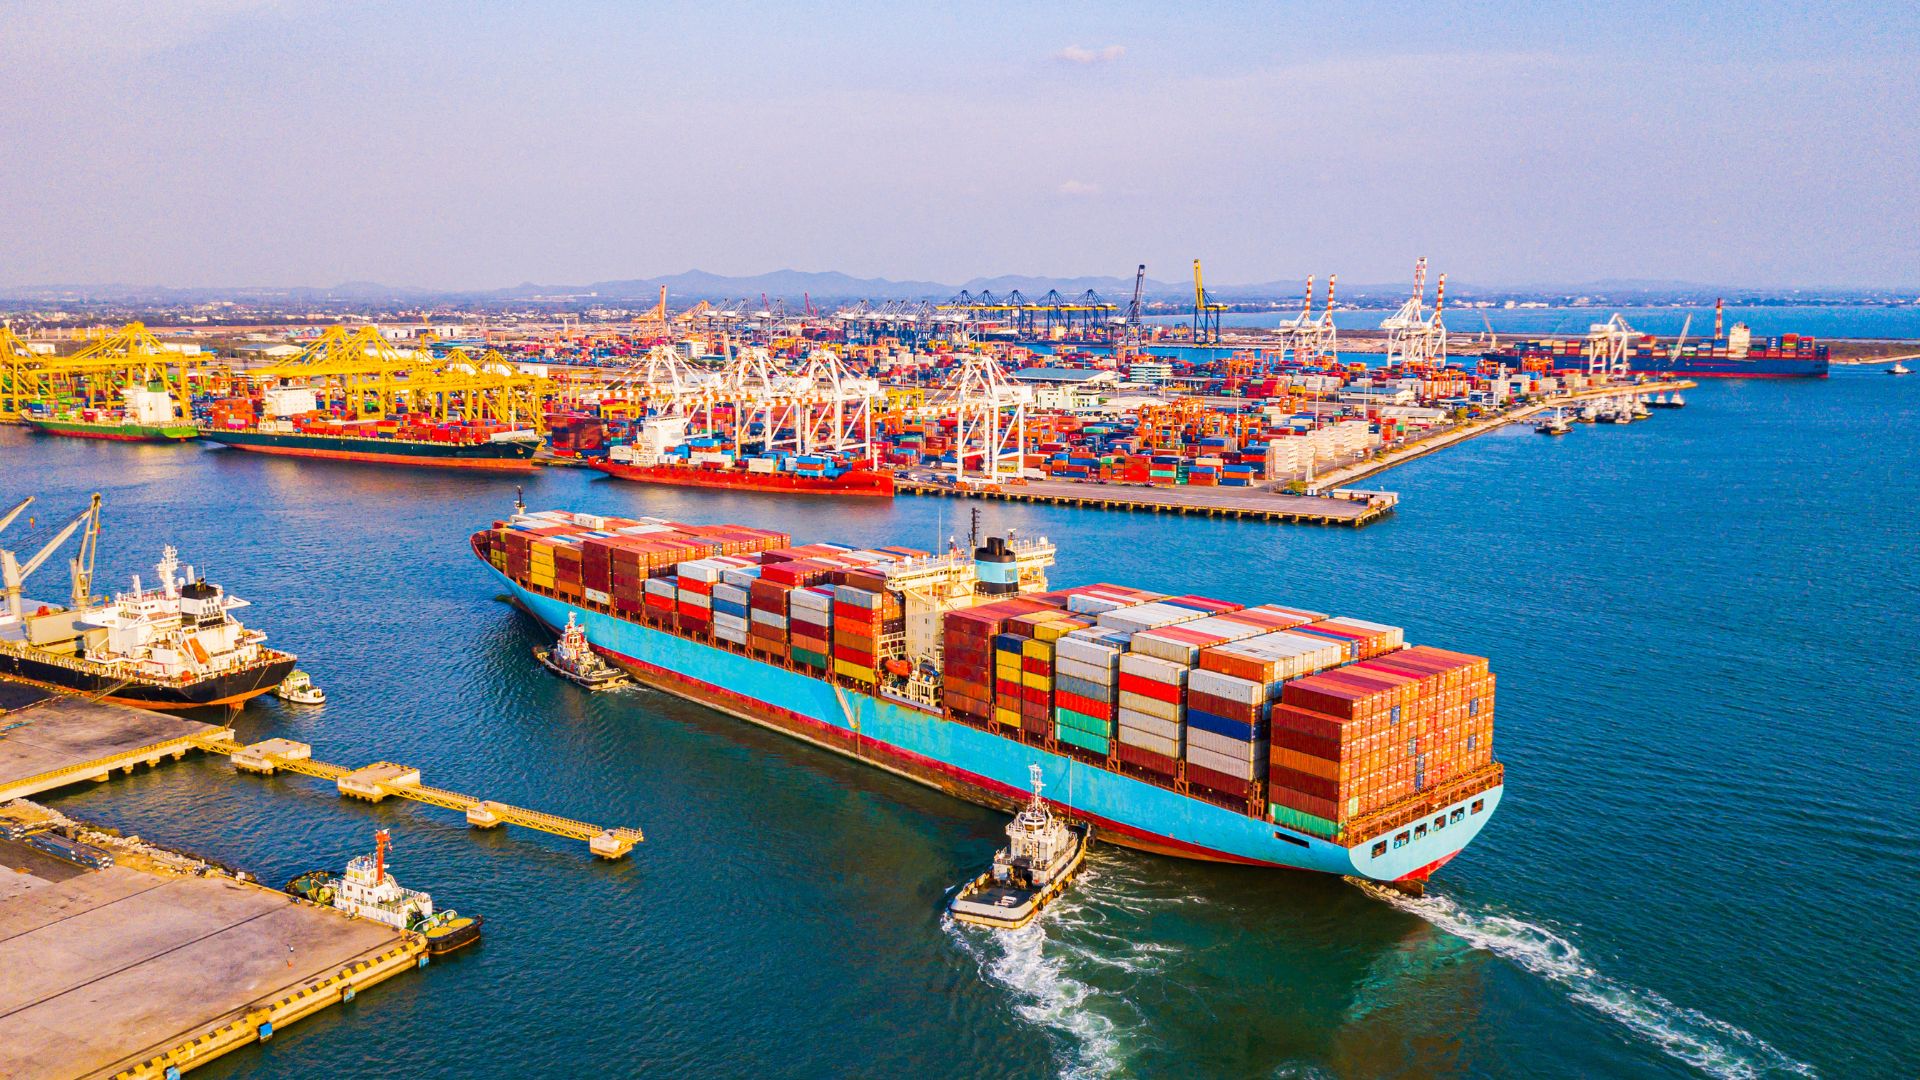 MODAL marítimo no transporte internacional de cargas como enviar um container em um navio quanto custa, vale a pena frete internacional prompt logistica